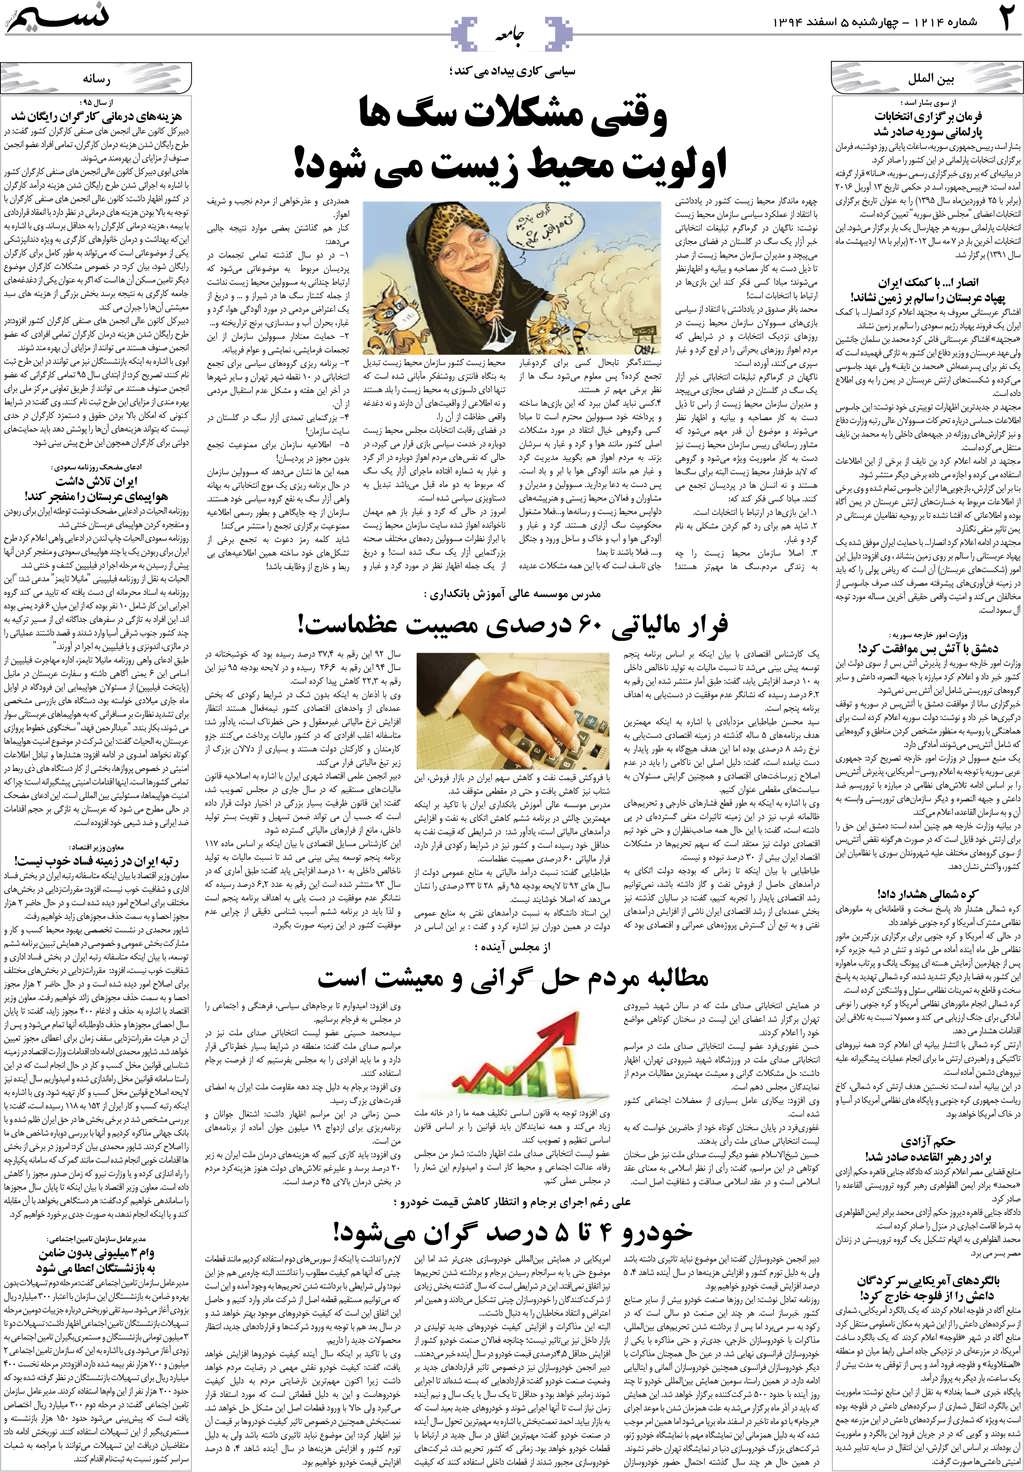 صفحه جامعه روزنامه نسیم شماره 1214